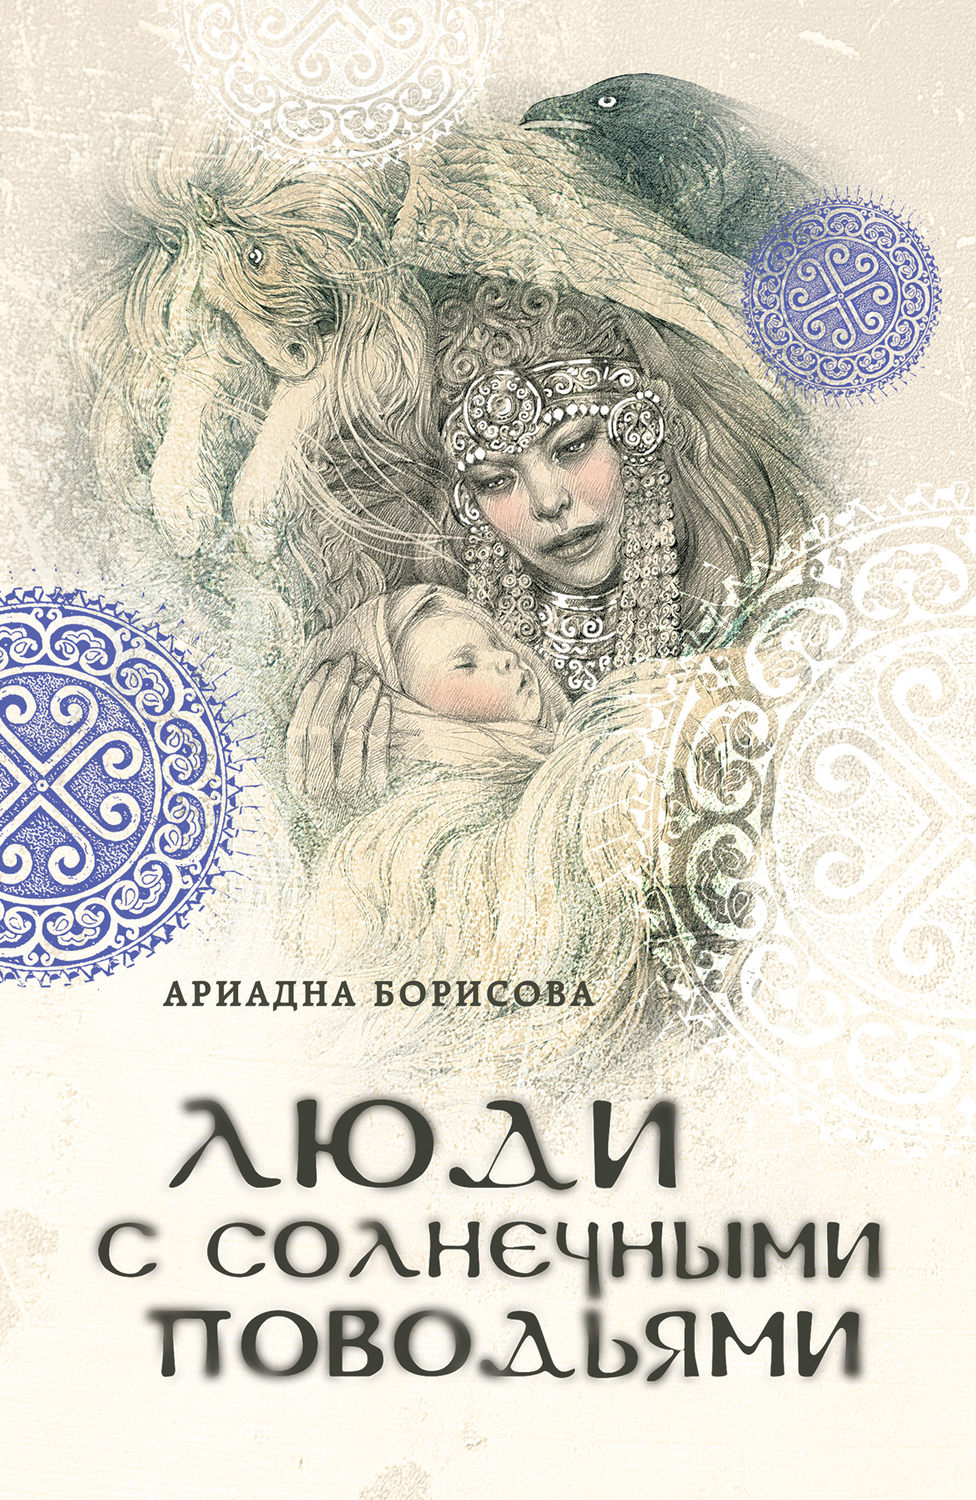 Скачать бесплатно книги ариадны борисовой